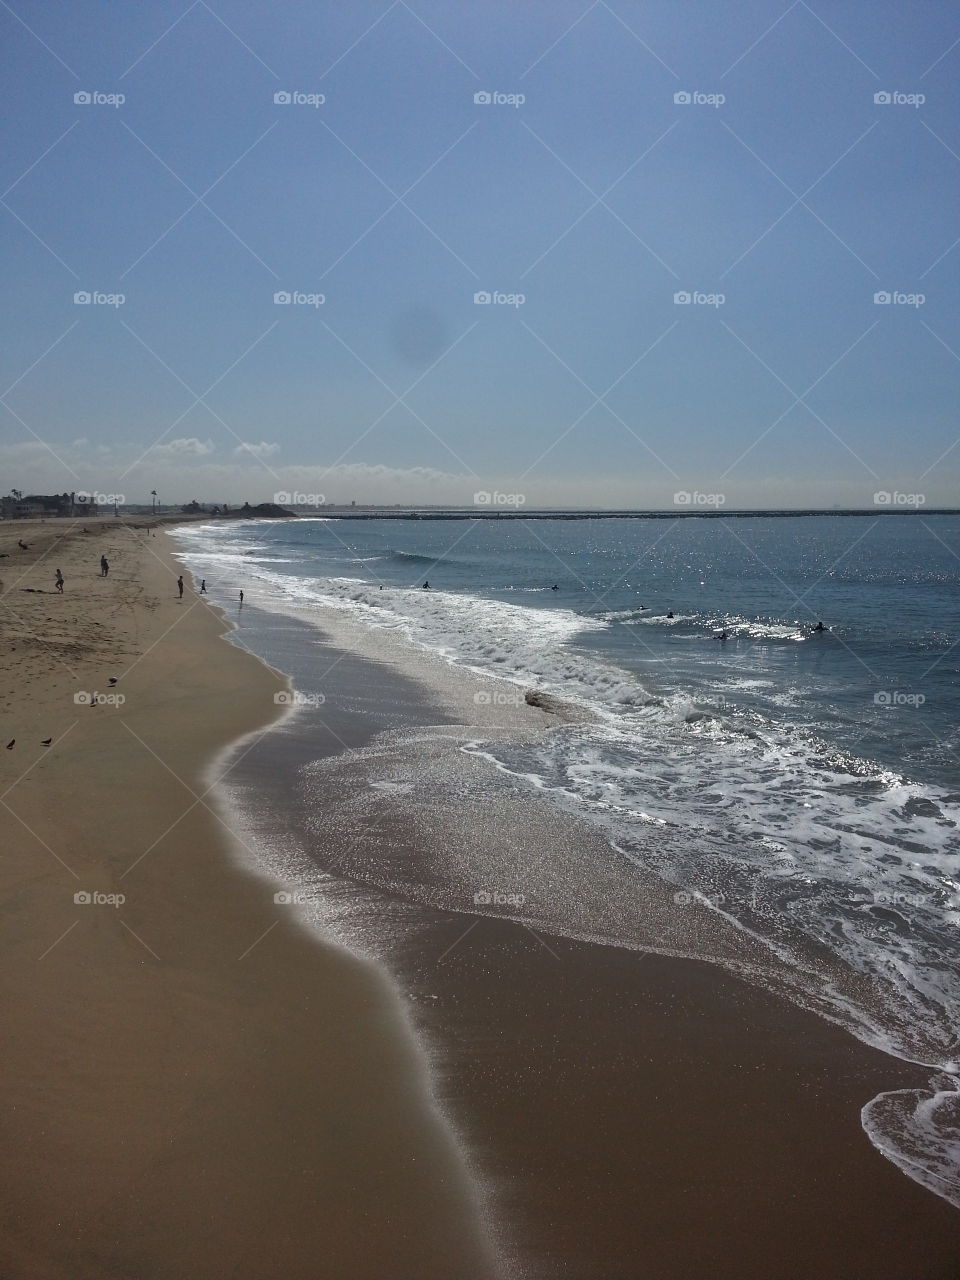 Seal beach waves. taking a walk on the beach